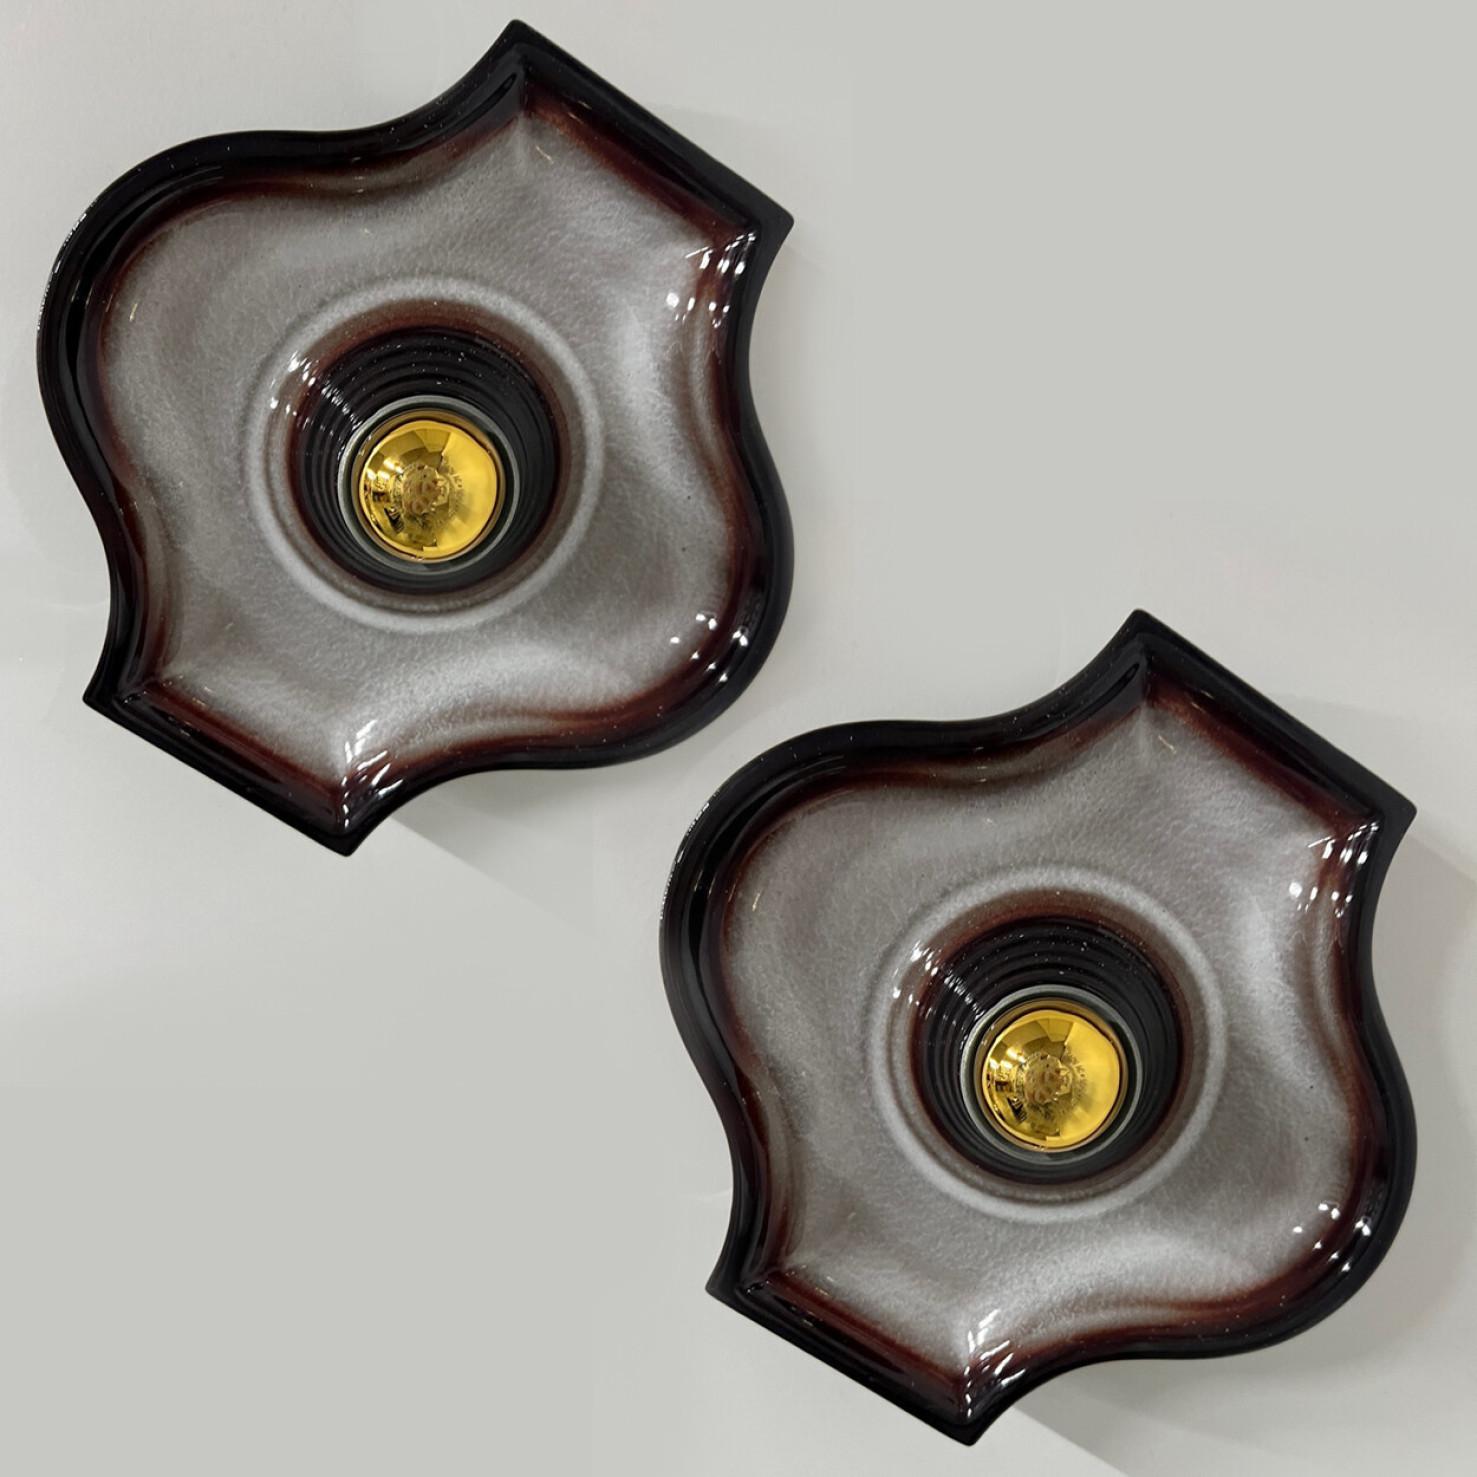 Appliques ovales en céramique grise et brune dans le style Fat Lava. Fabriqué par Hustadt Leuchten Keramik, Allemagne, dans les années 1970.

Le style de l'émail est appelé 